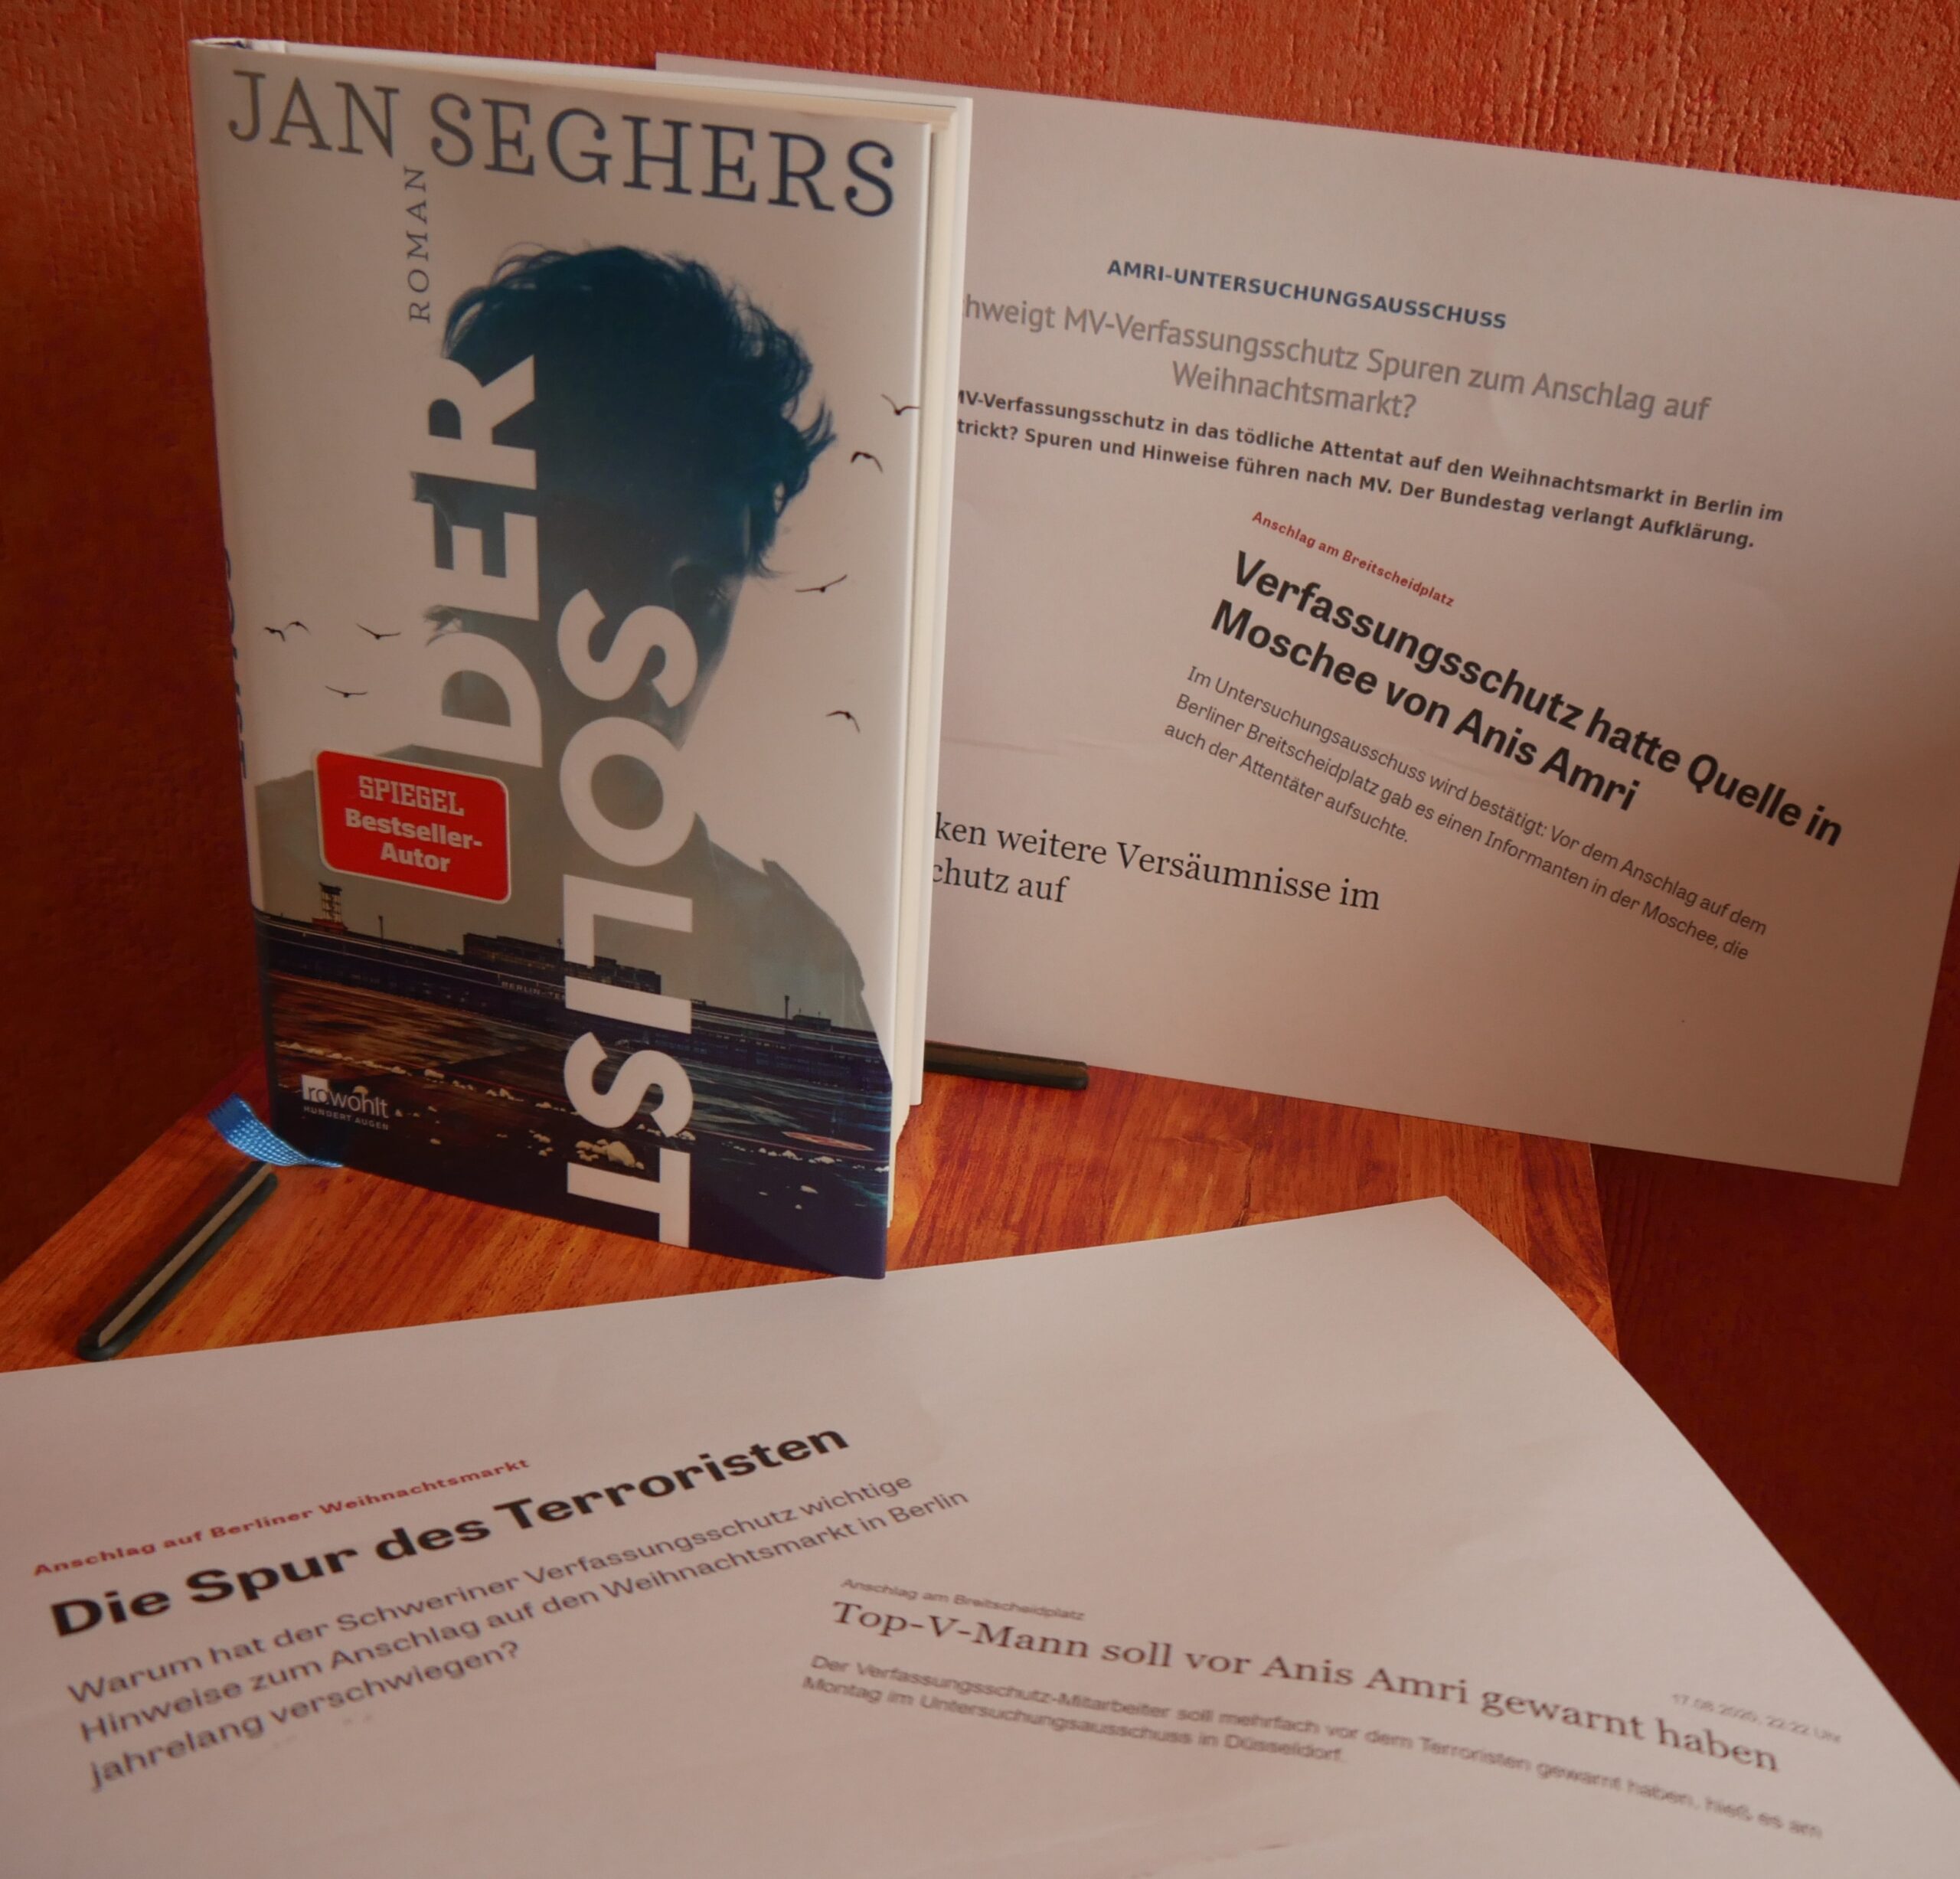 Seghers, Jan: Der Solist – Rezension